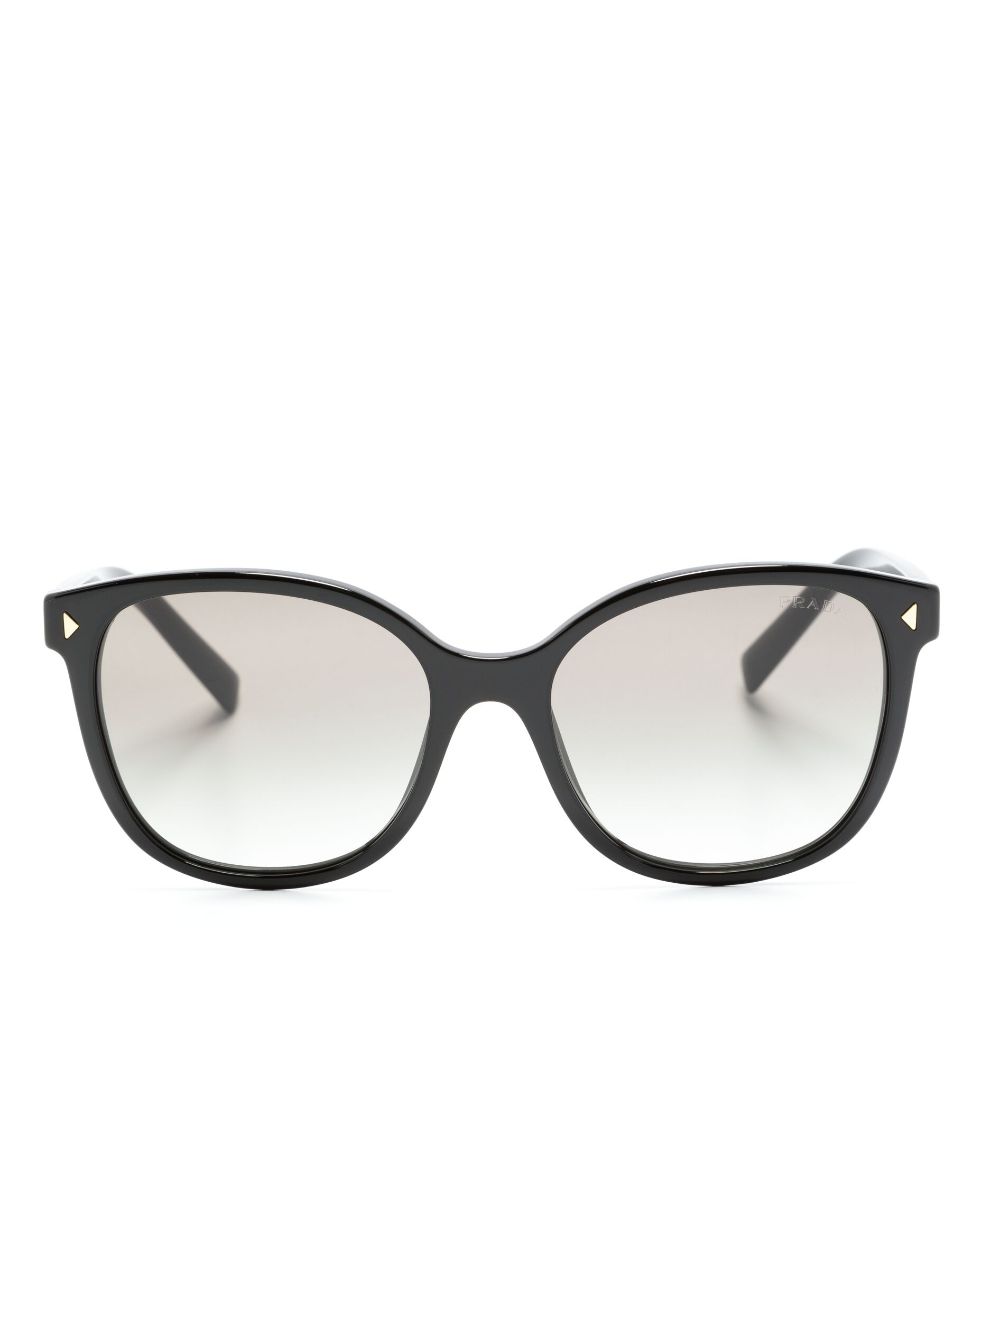 Prada Eyewear Sonnenbrille mit eckigem Gestell - Schwarz von Prada Eyewear